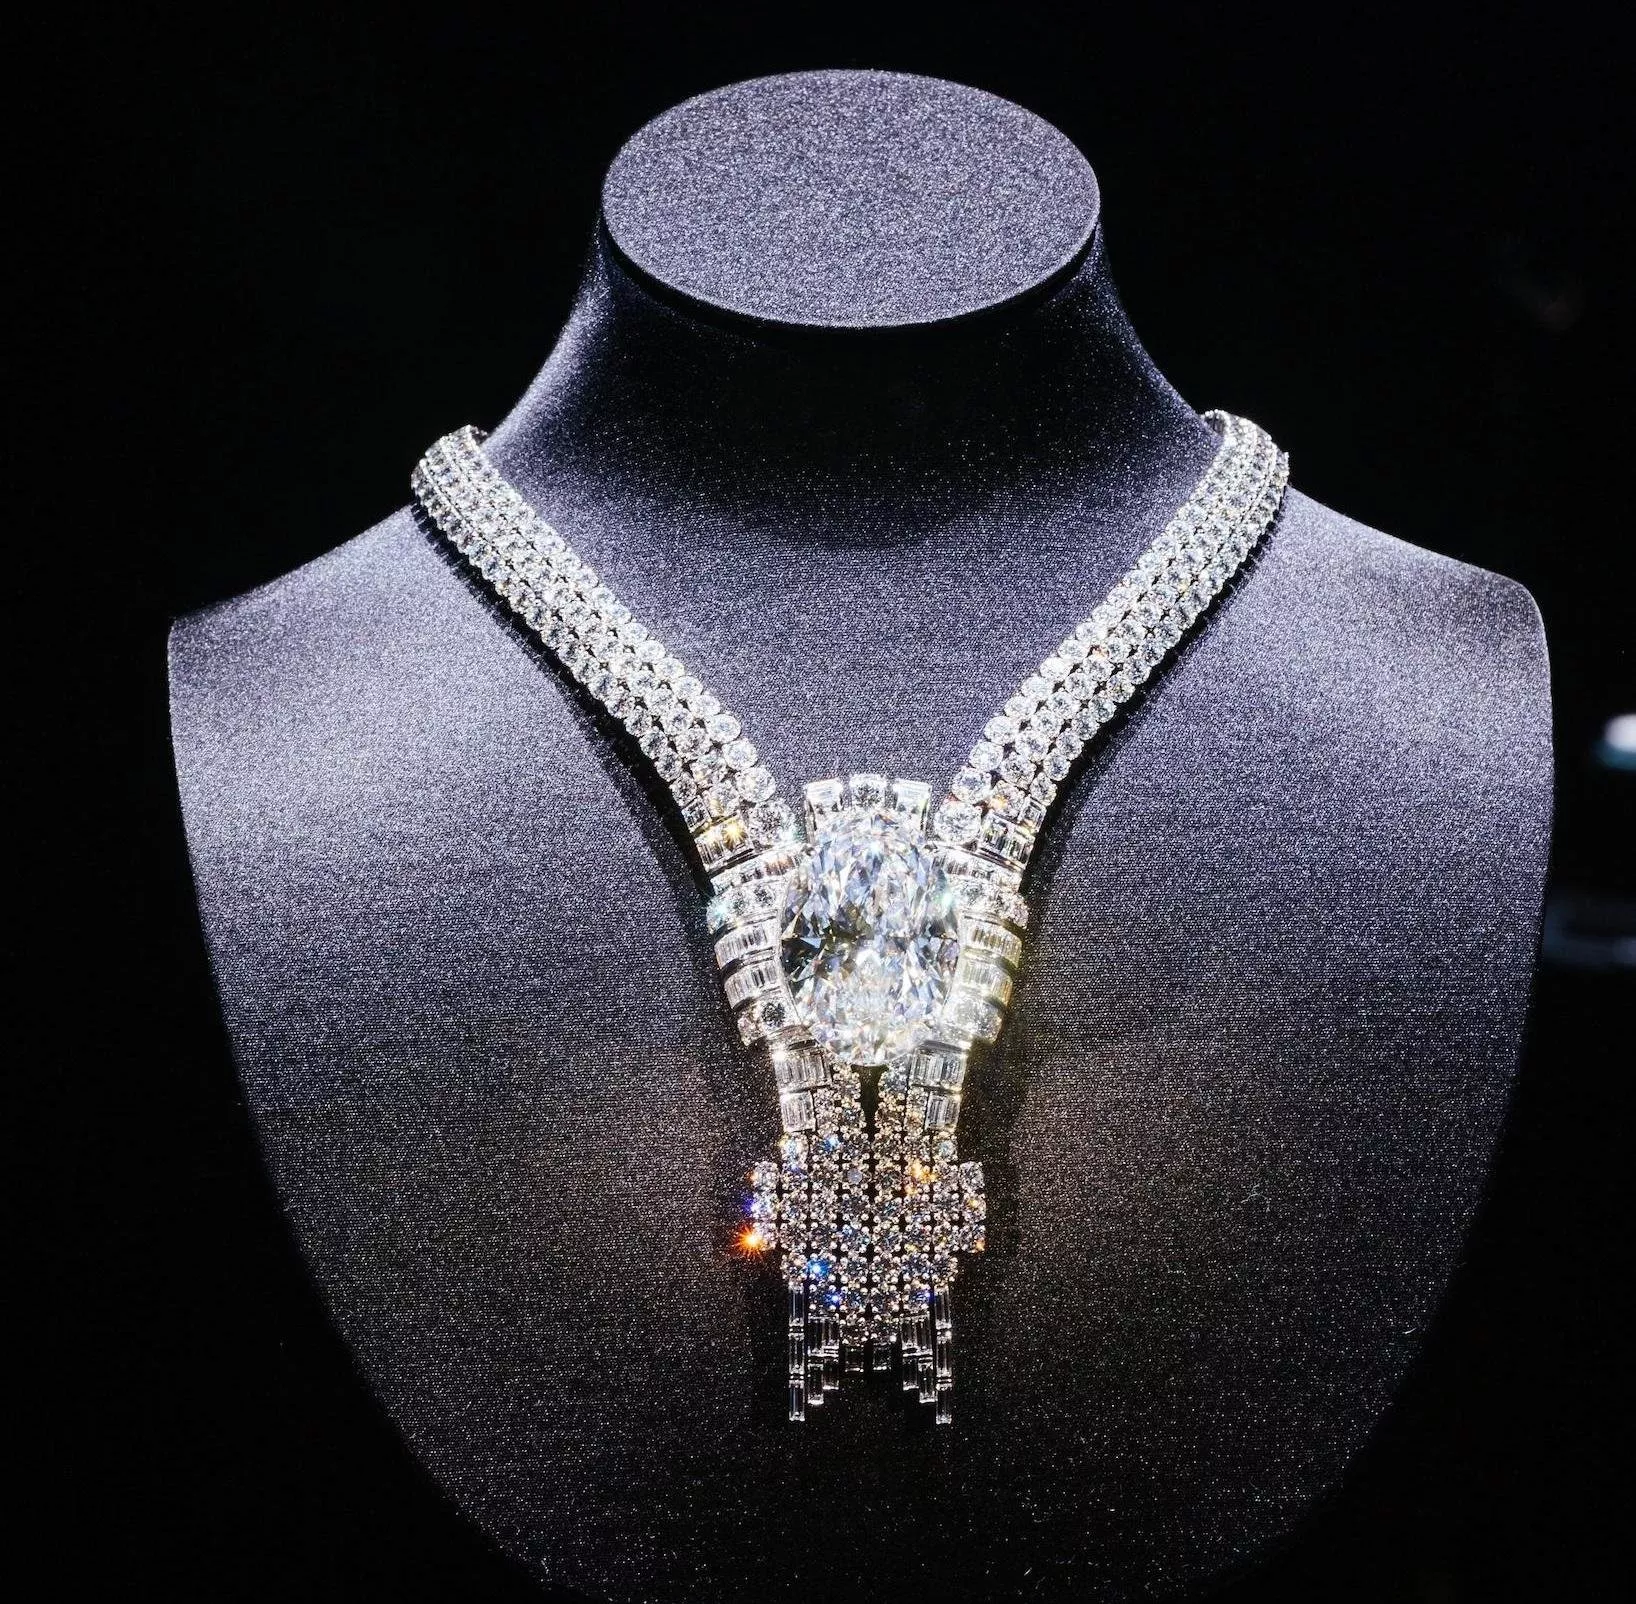 للمرة الأولى في الشرق الأوسط، علامة .Tiffany & Co تعرض أكثر من 200 قطعة من المجوهرات الراقية